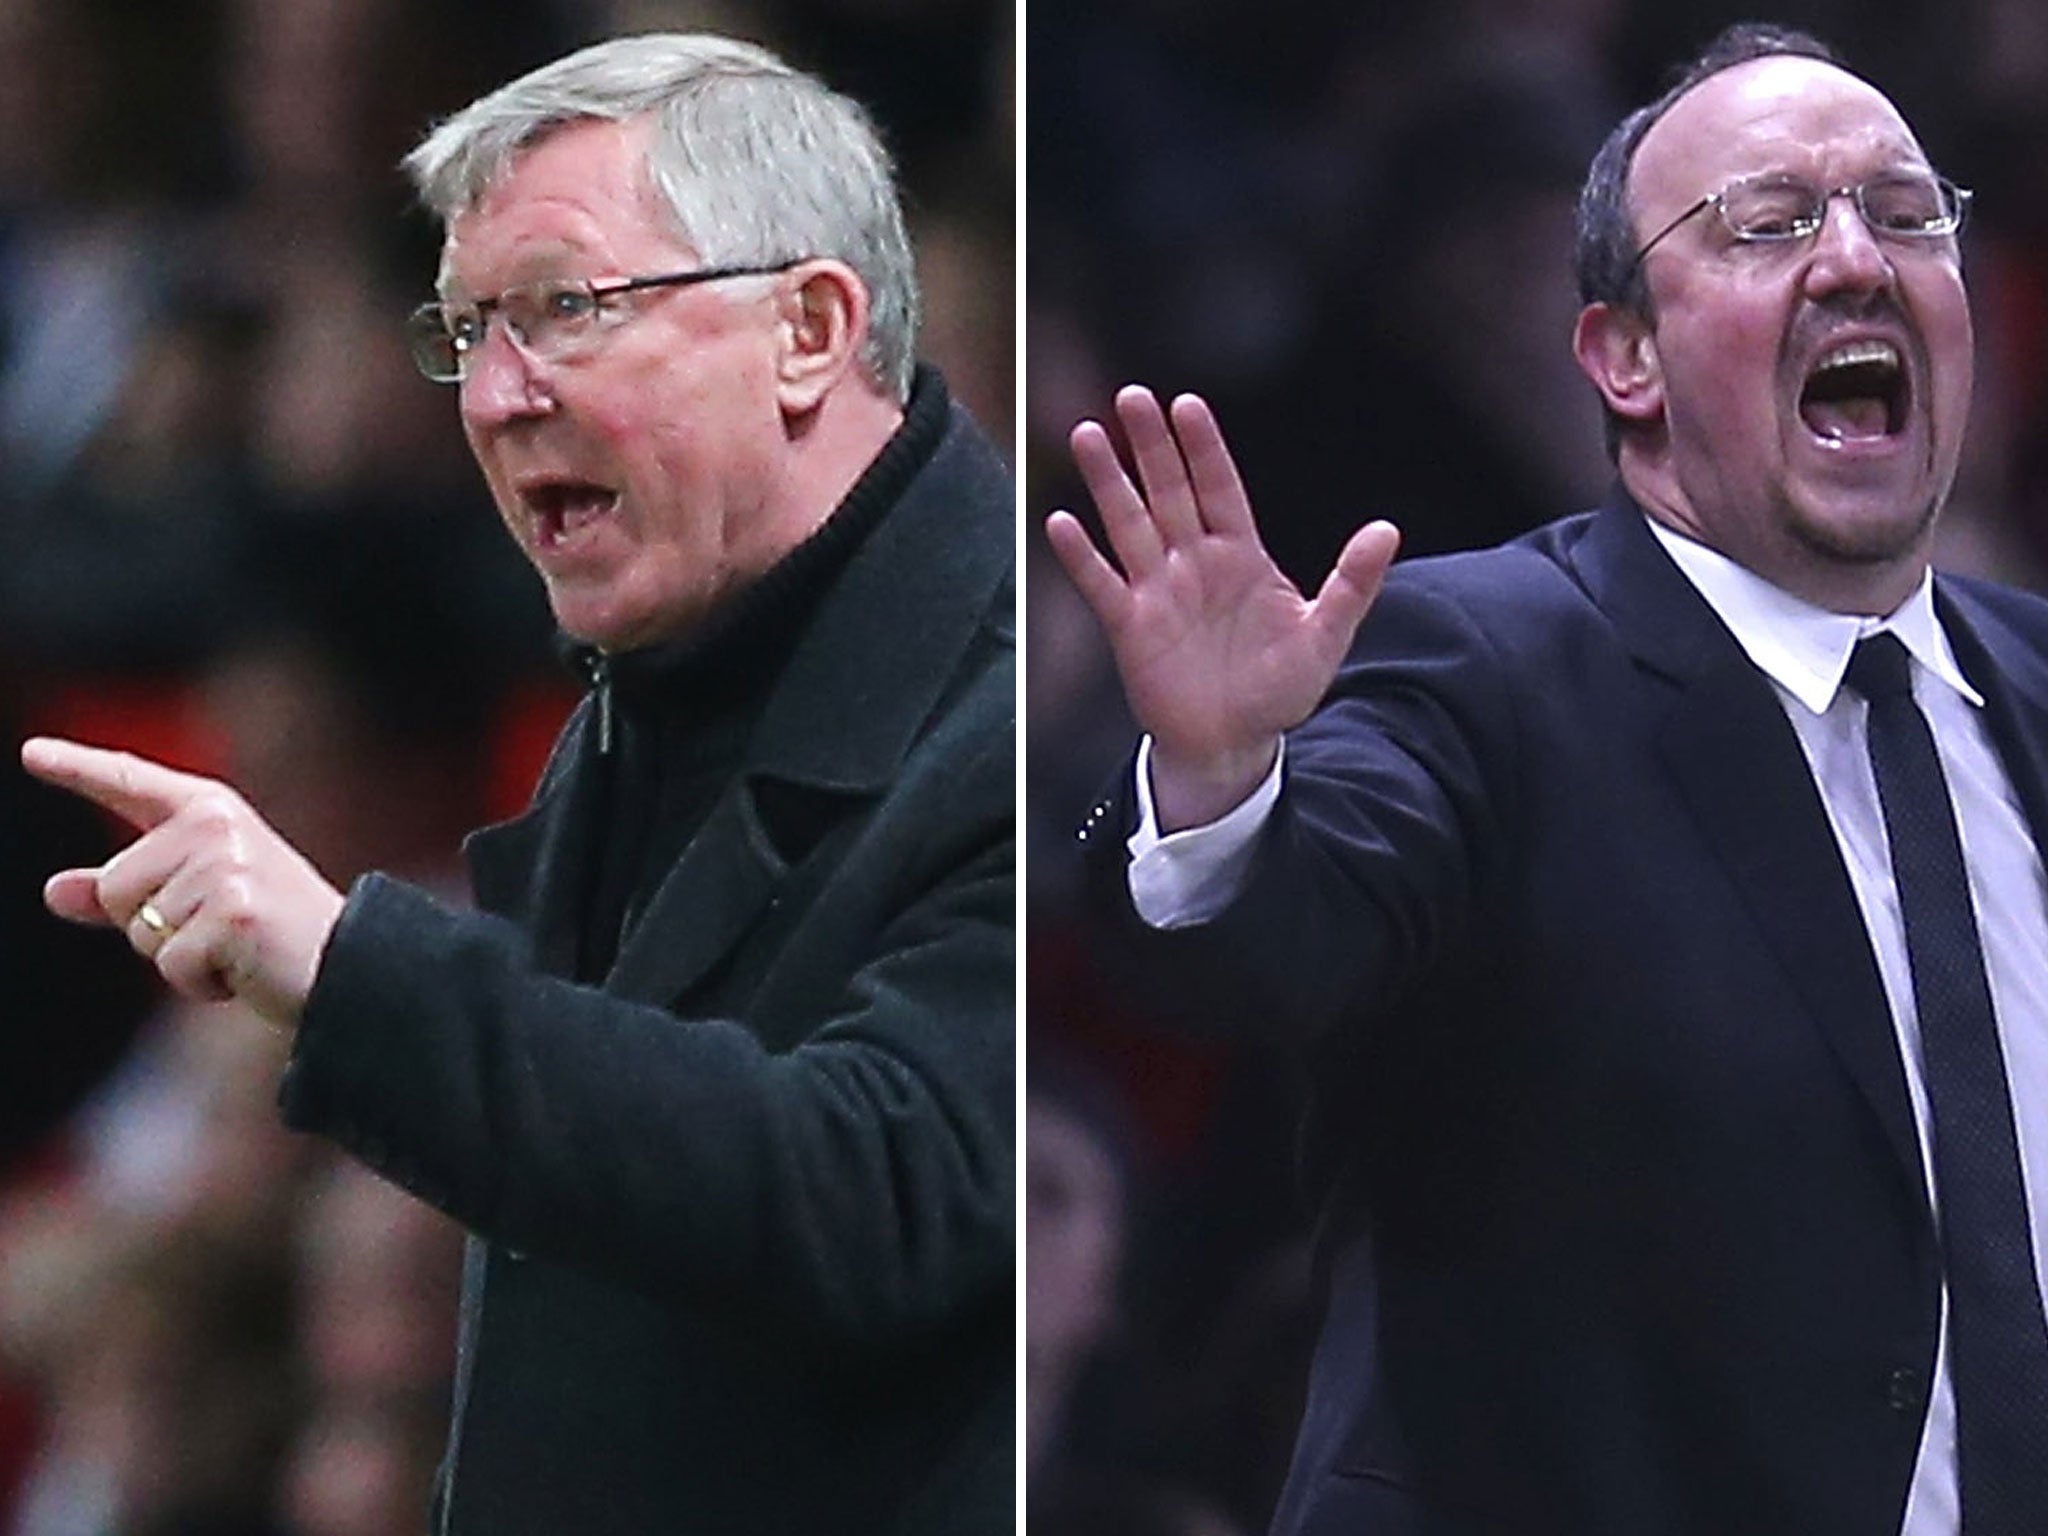 Sir Alex Ferguson and Rafael Benitez have renewed their feud